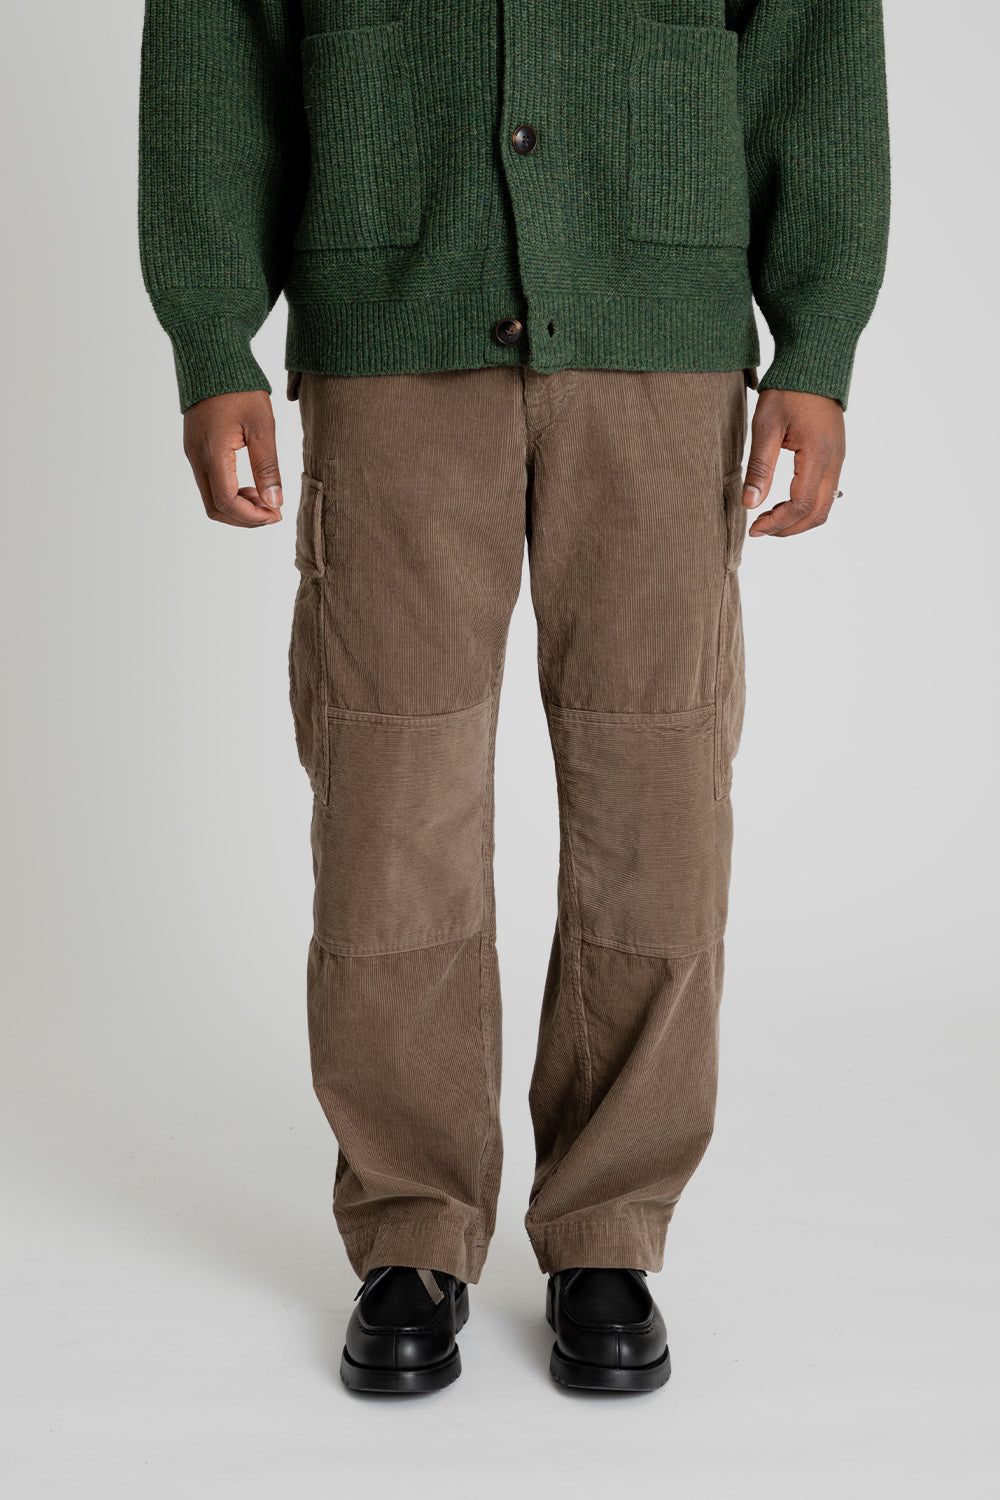 Frizmworks Corduroy M65 Field Pants in Brown